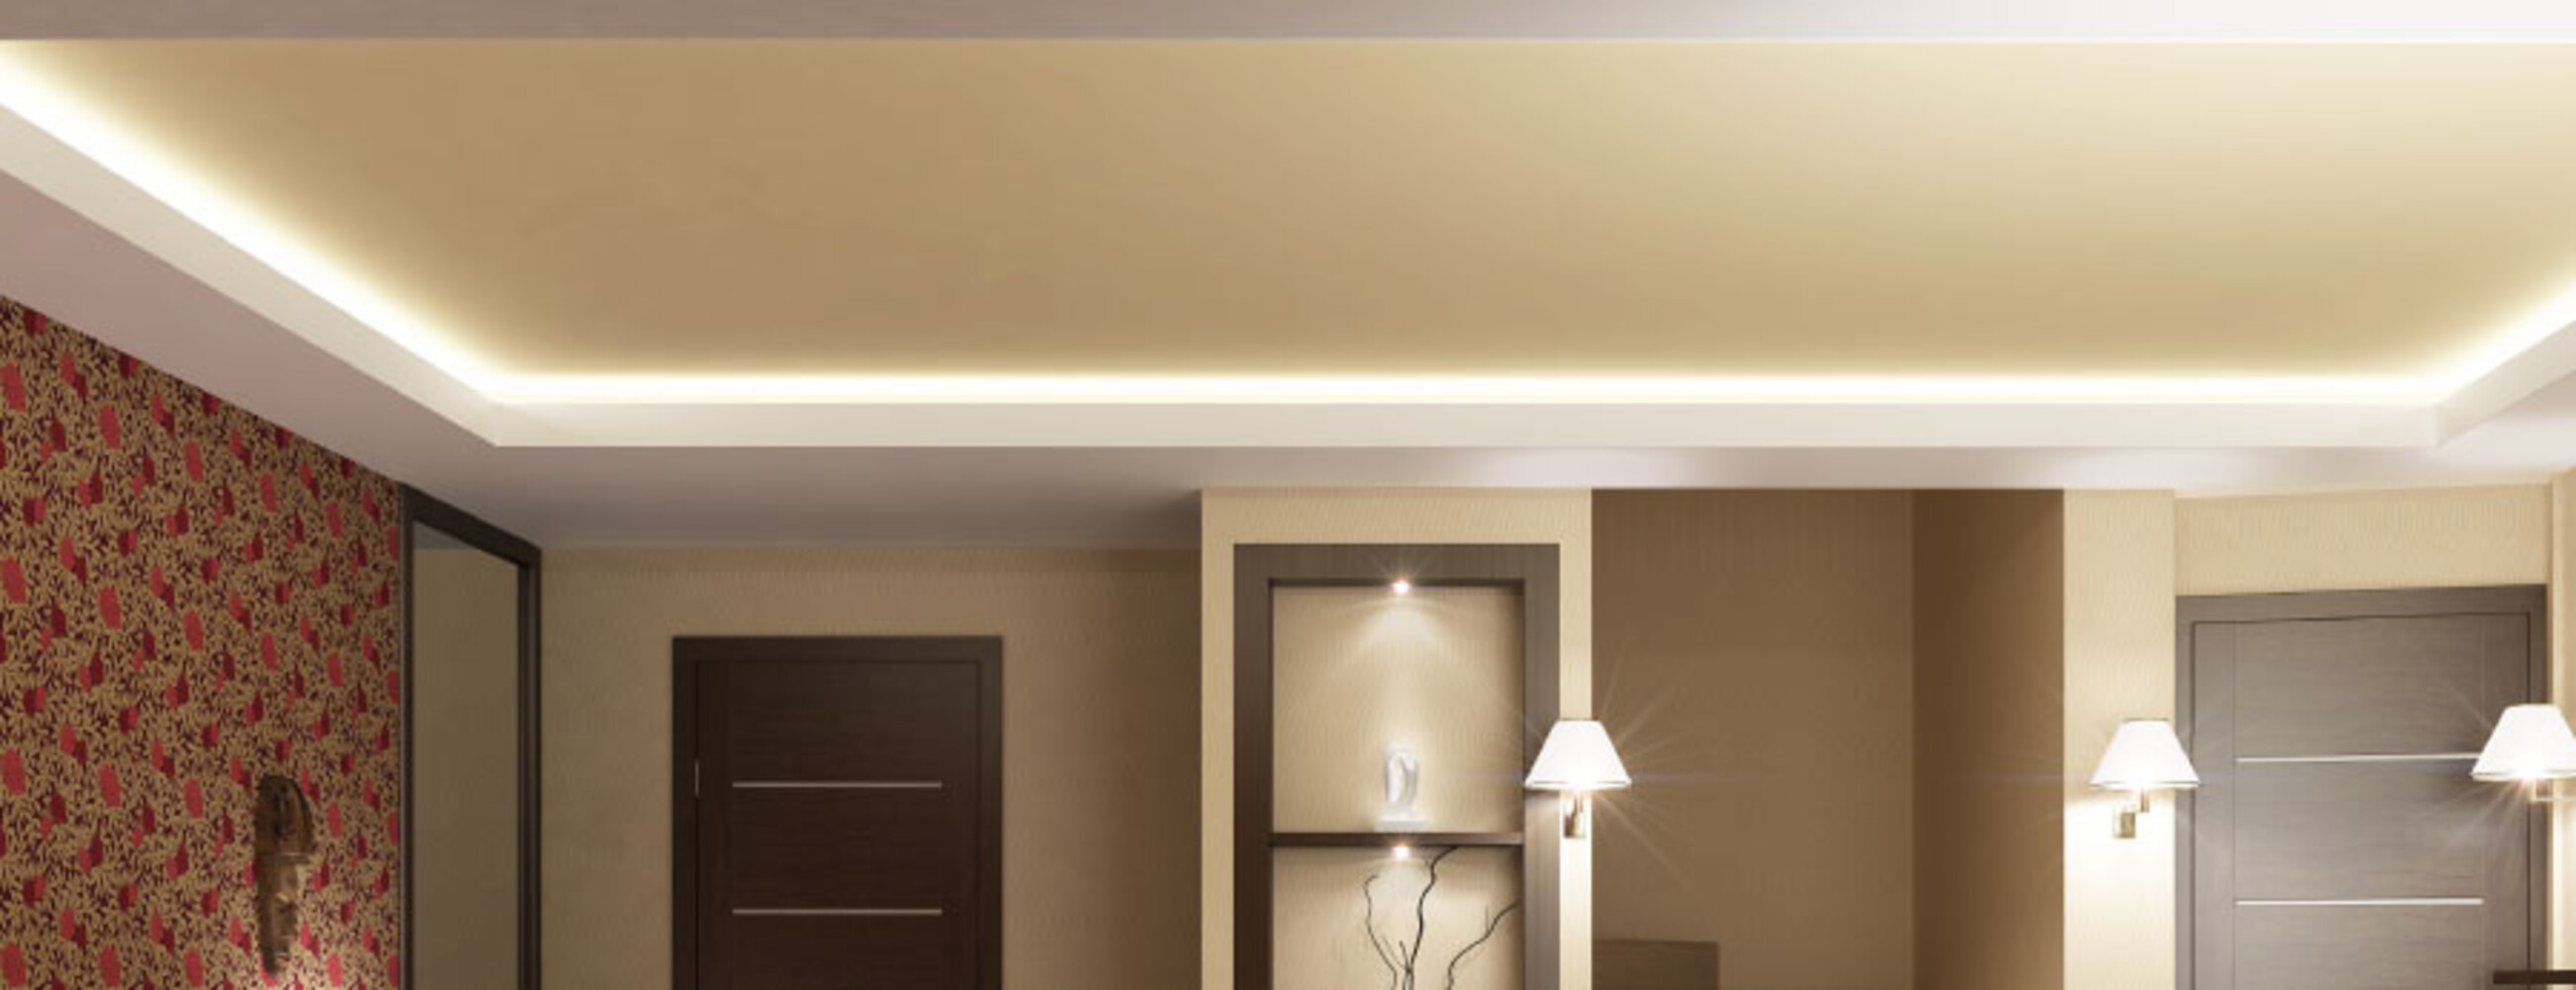 Premium warmweißer LED Streifen von LED Universum in S-Form mit beeindruckenden 72 LEDs pro Meter